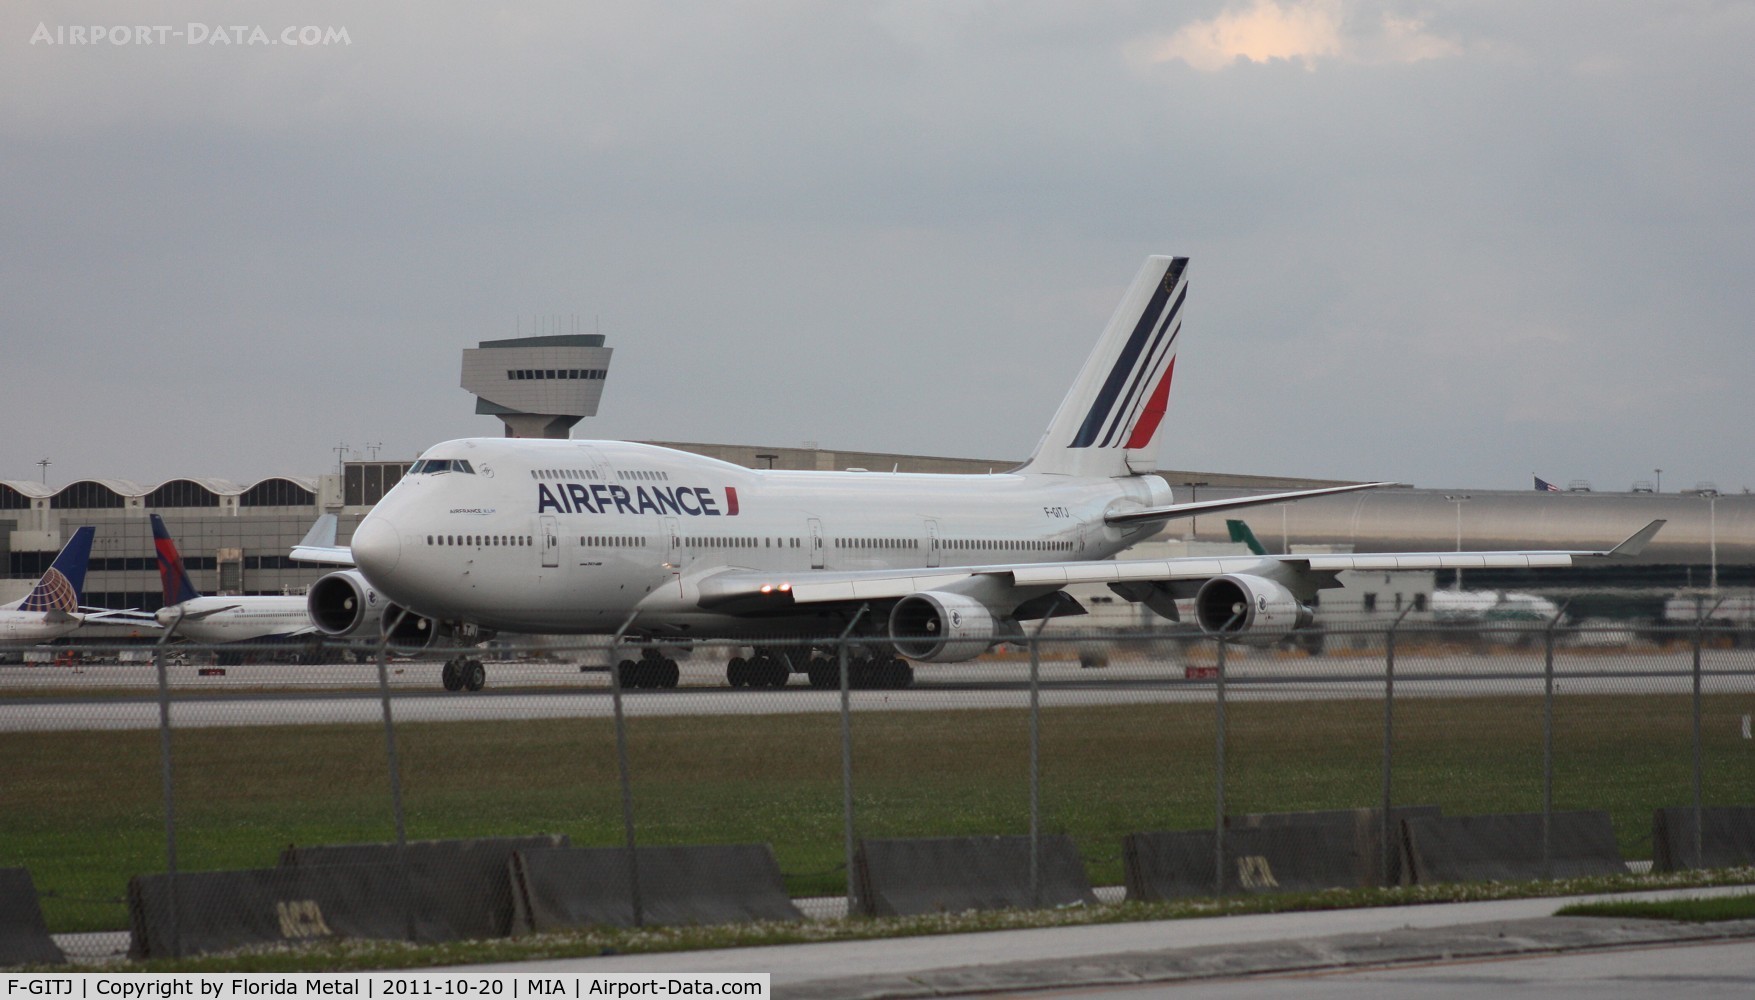 F-GITJ, 2004 Boeing 747-428 C/N 32871, Air France 747